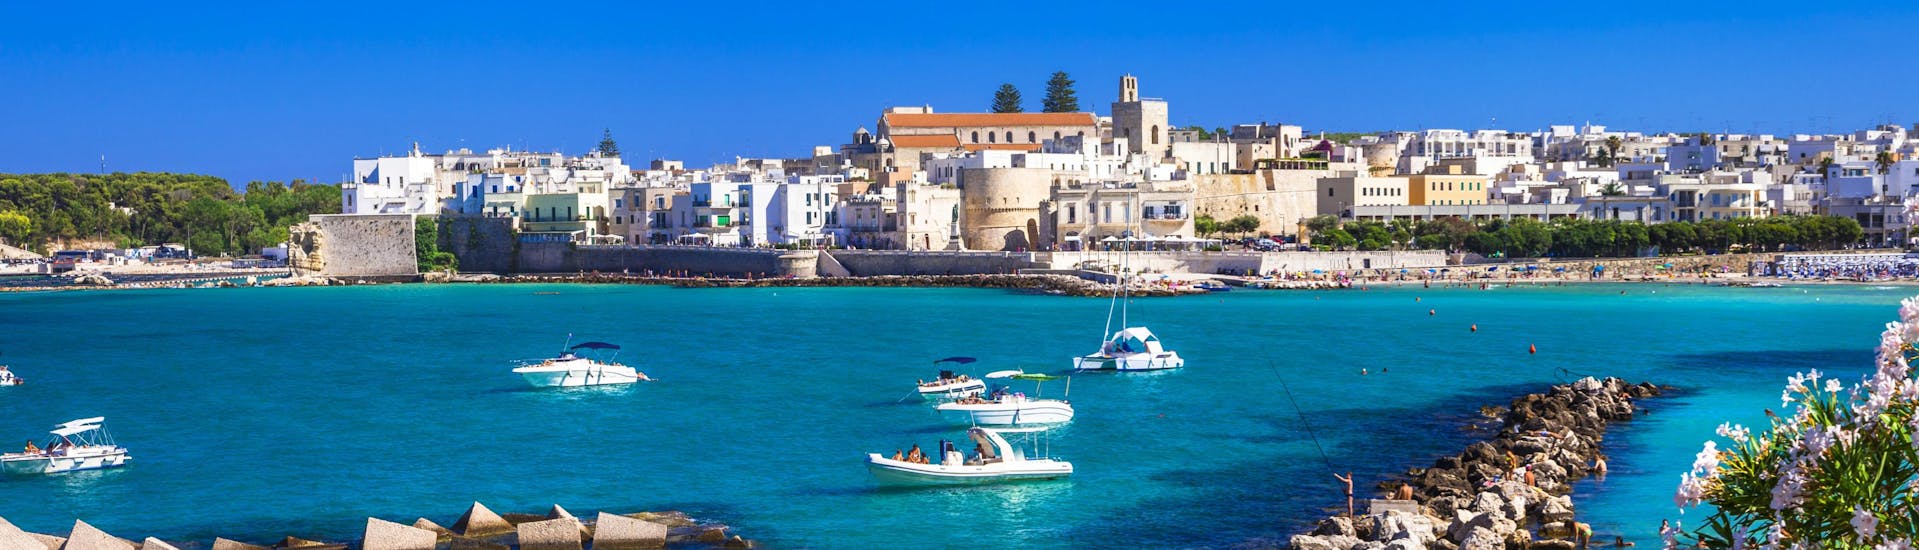 La ciudad de Otranto vista por el mar, una hermosa vista que se puede disfrutar durante un paseo en barco.